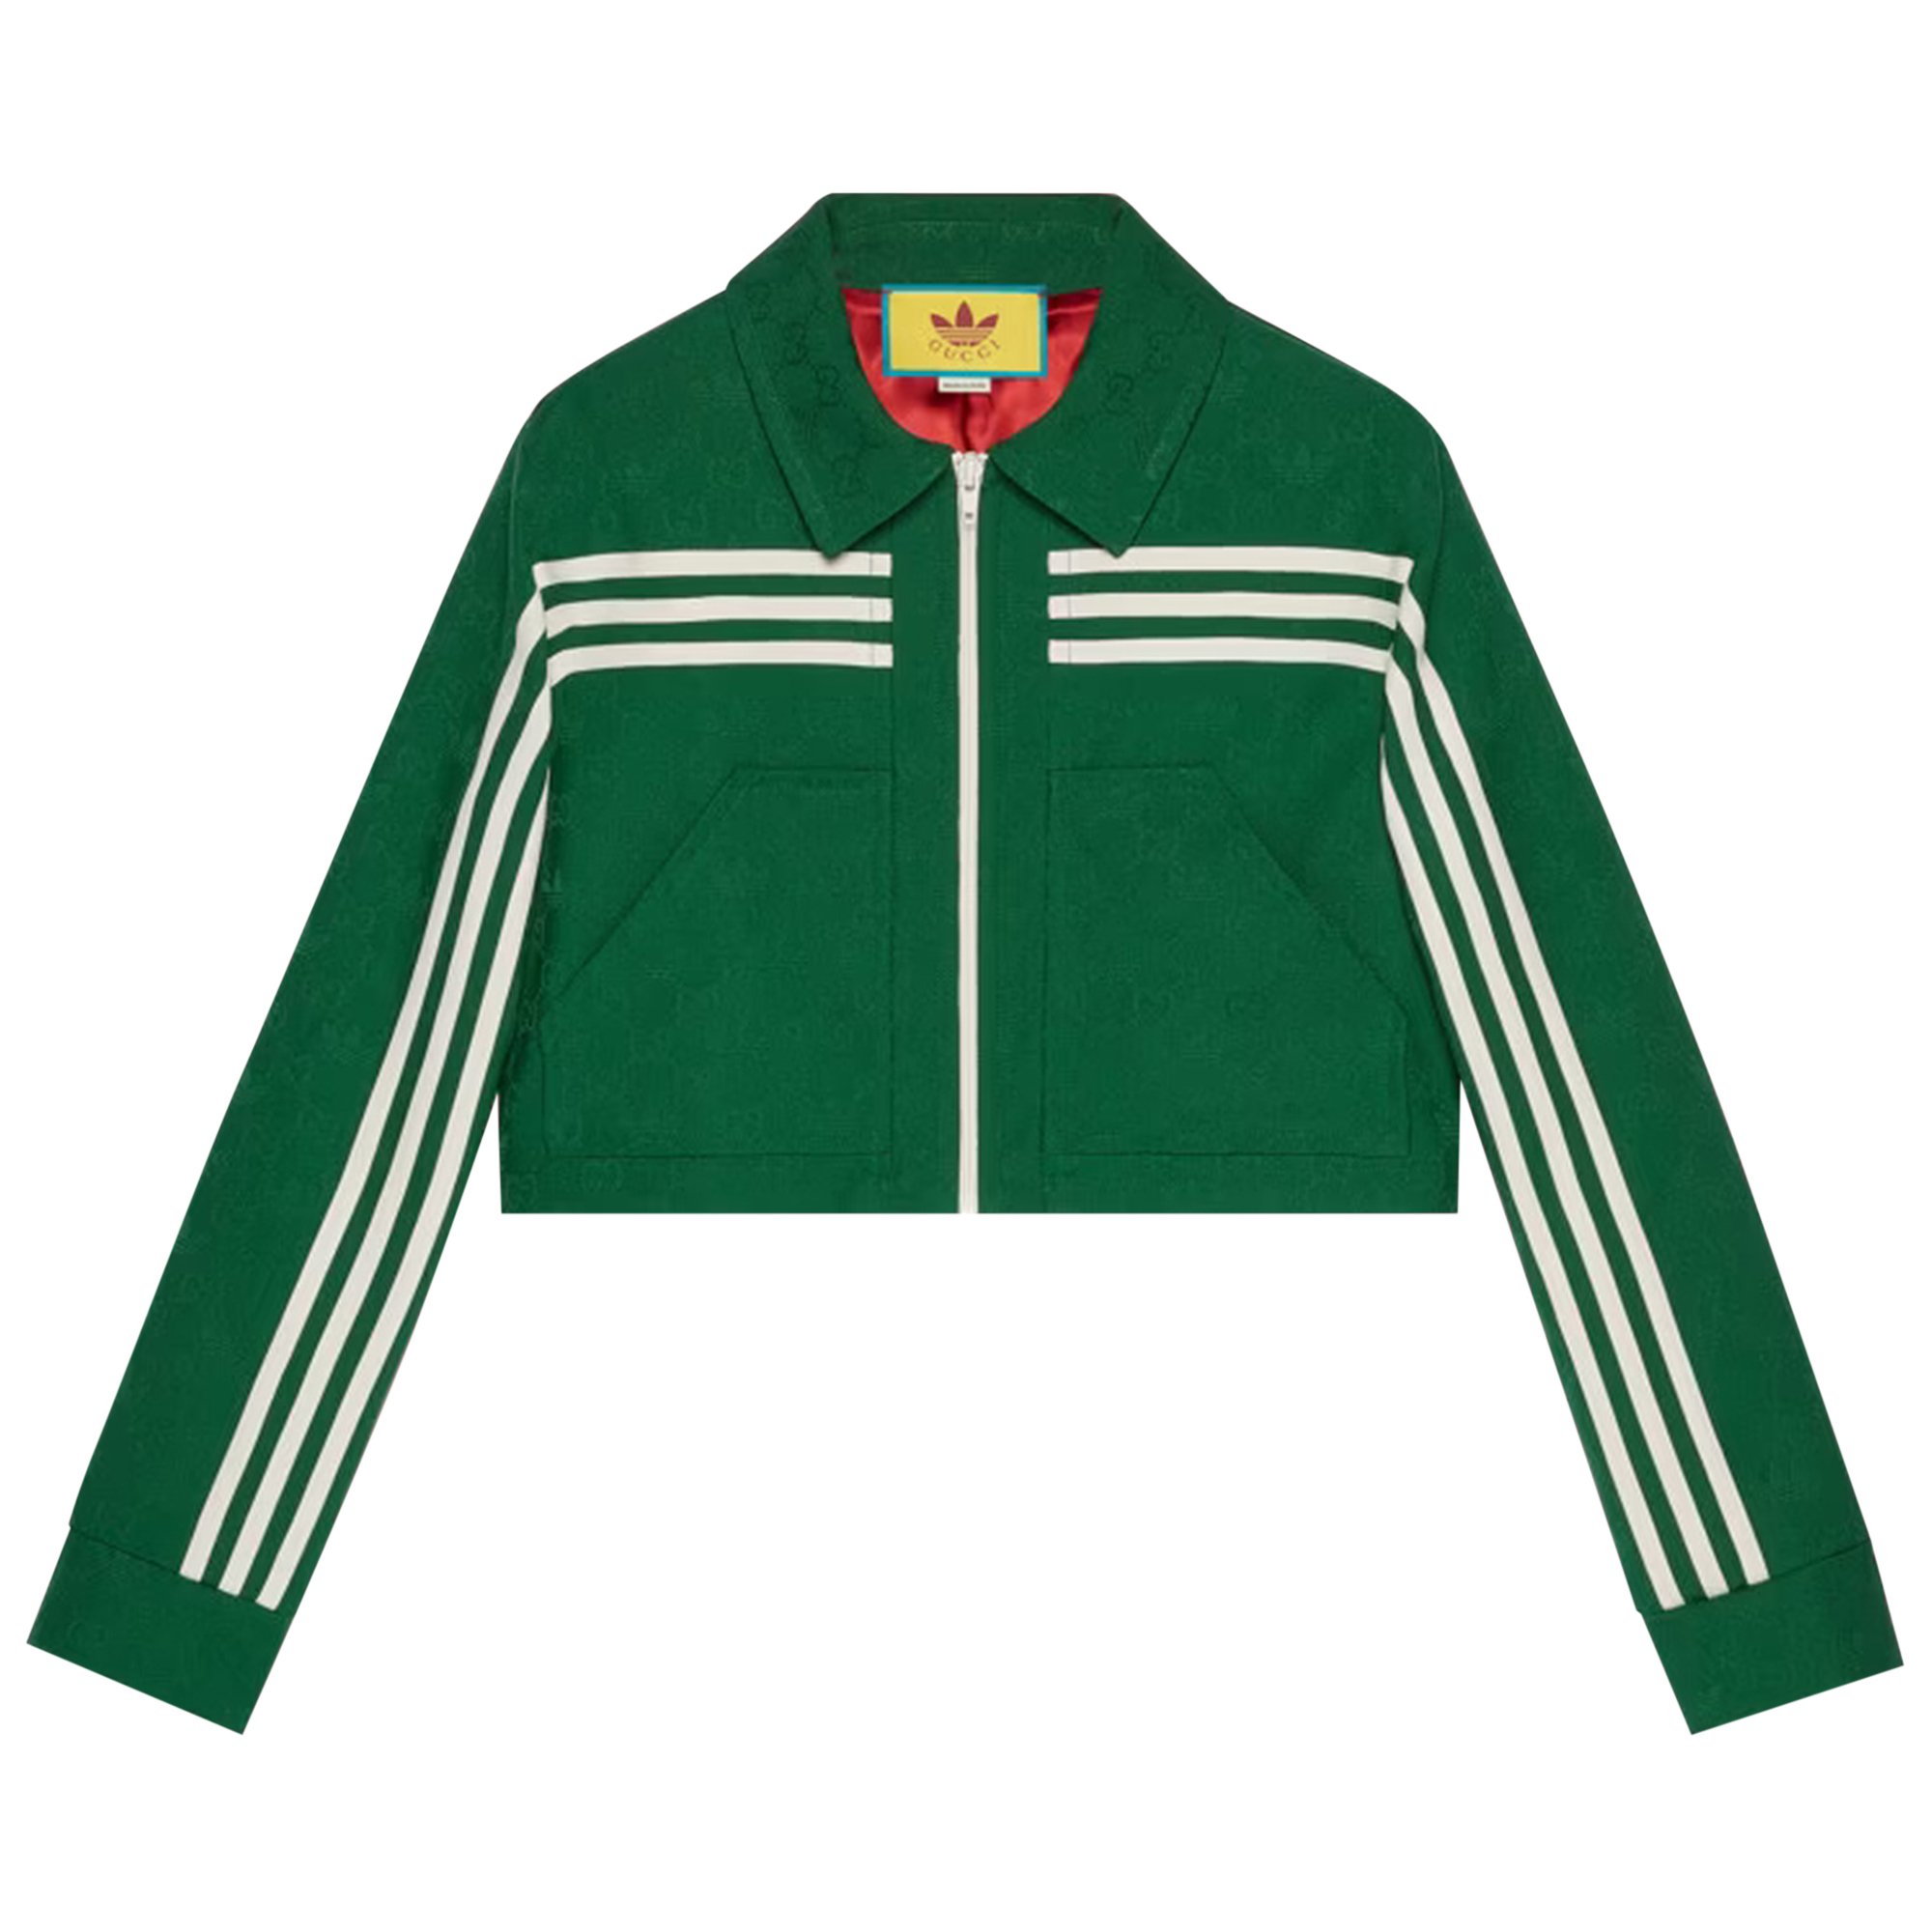 Buy Gucci x adidas Jacquard Jacket 'Green' - 702986 ZAI22 3229 | GOAT